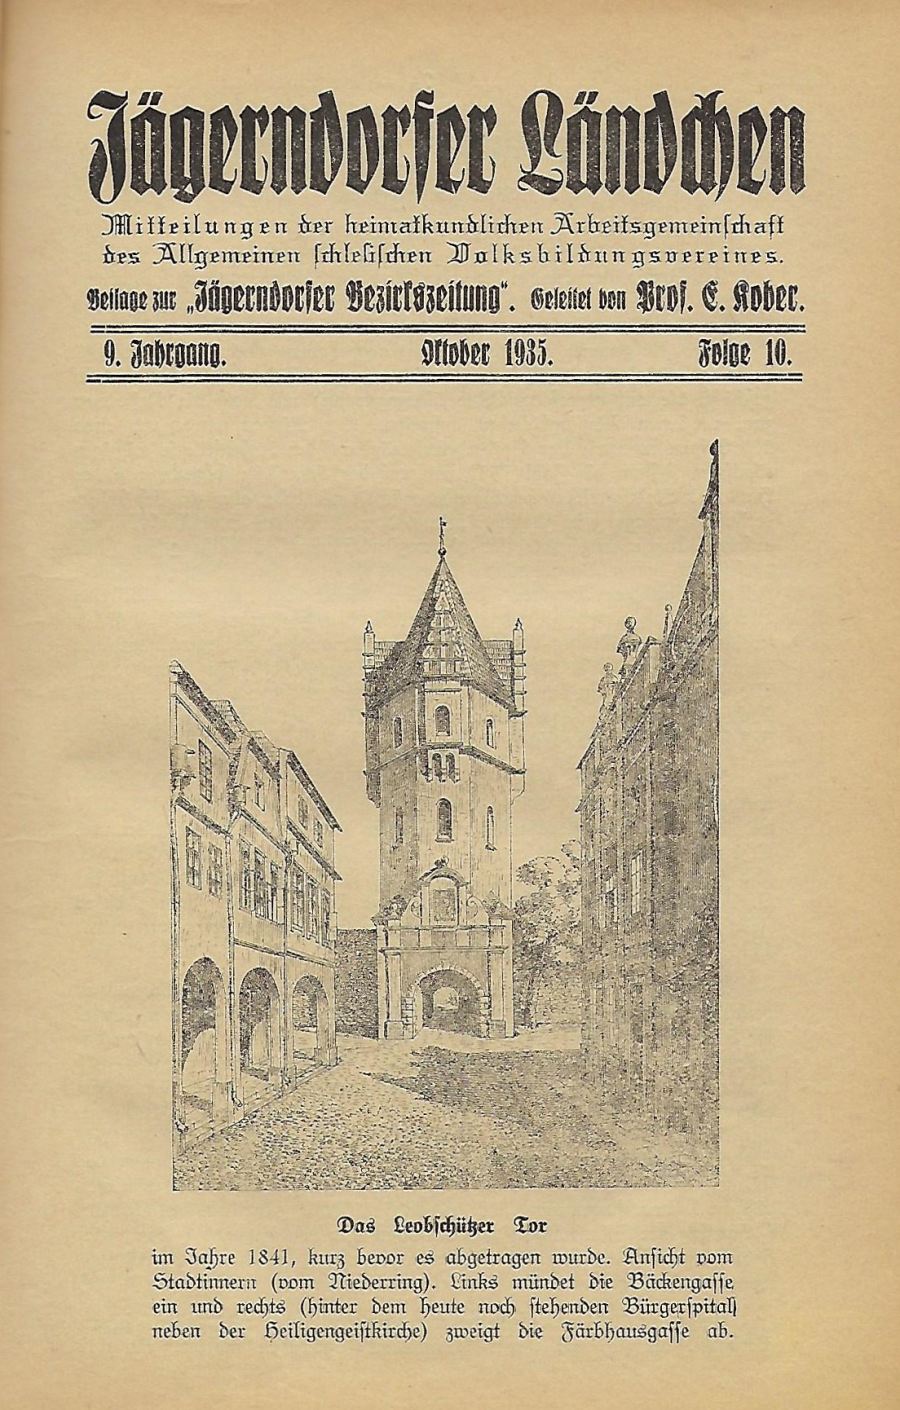 titulná strana časopisu Jägerndorfer Ländchen